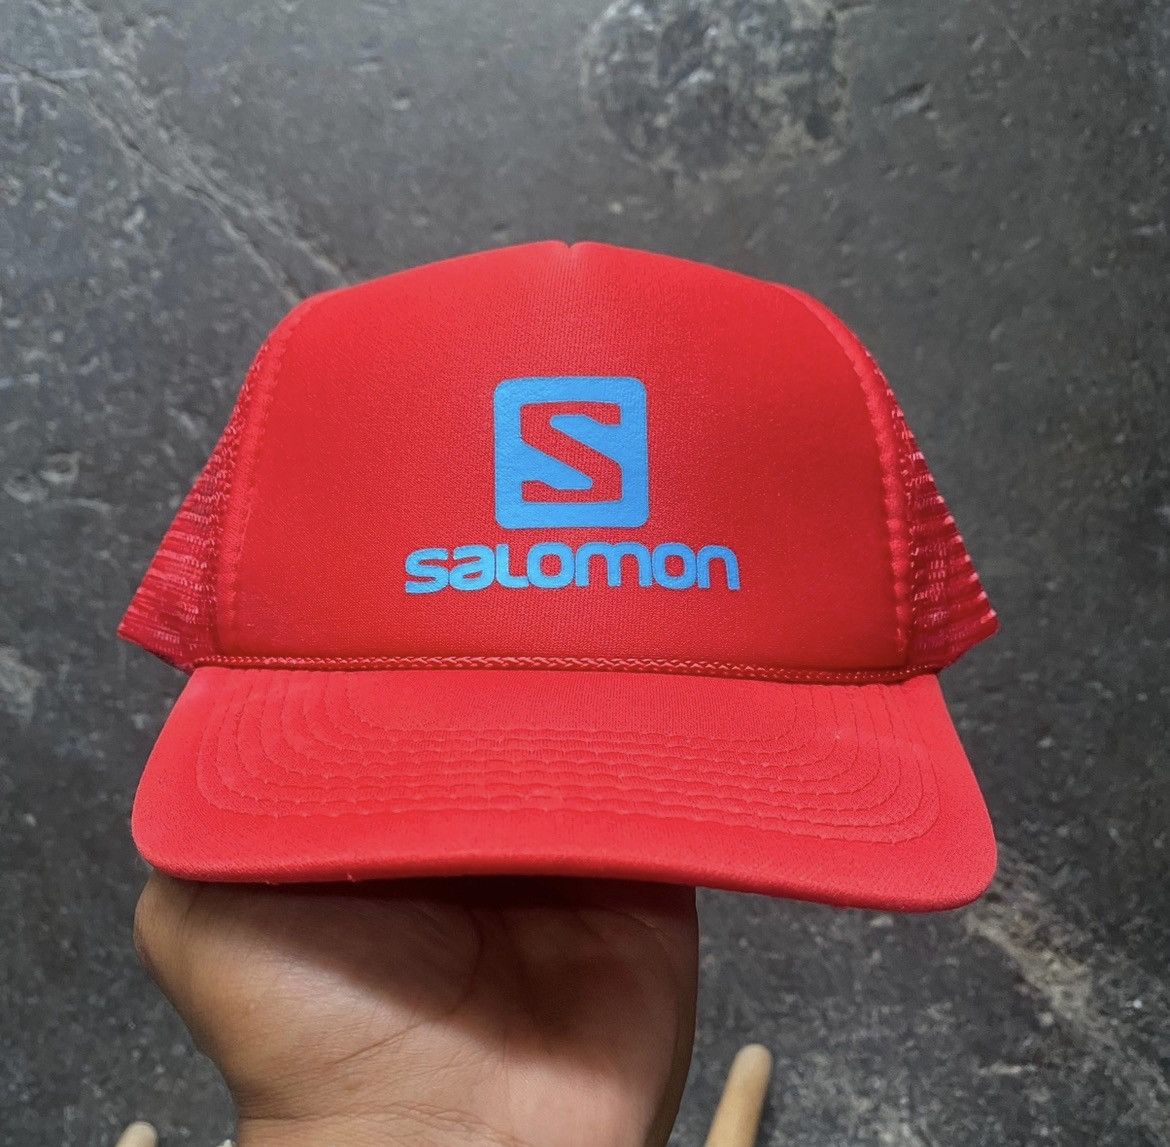 Salomon Vintage Salomon snapback hat | Grailed